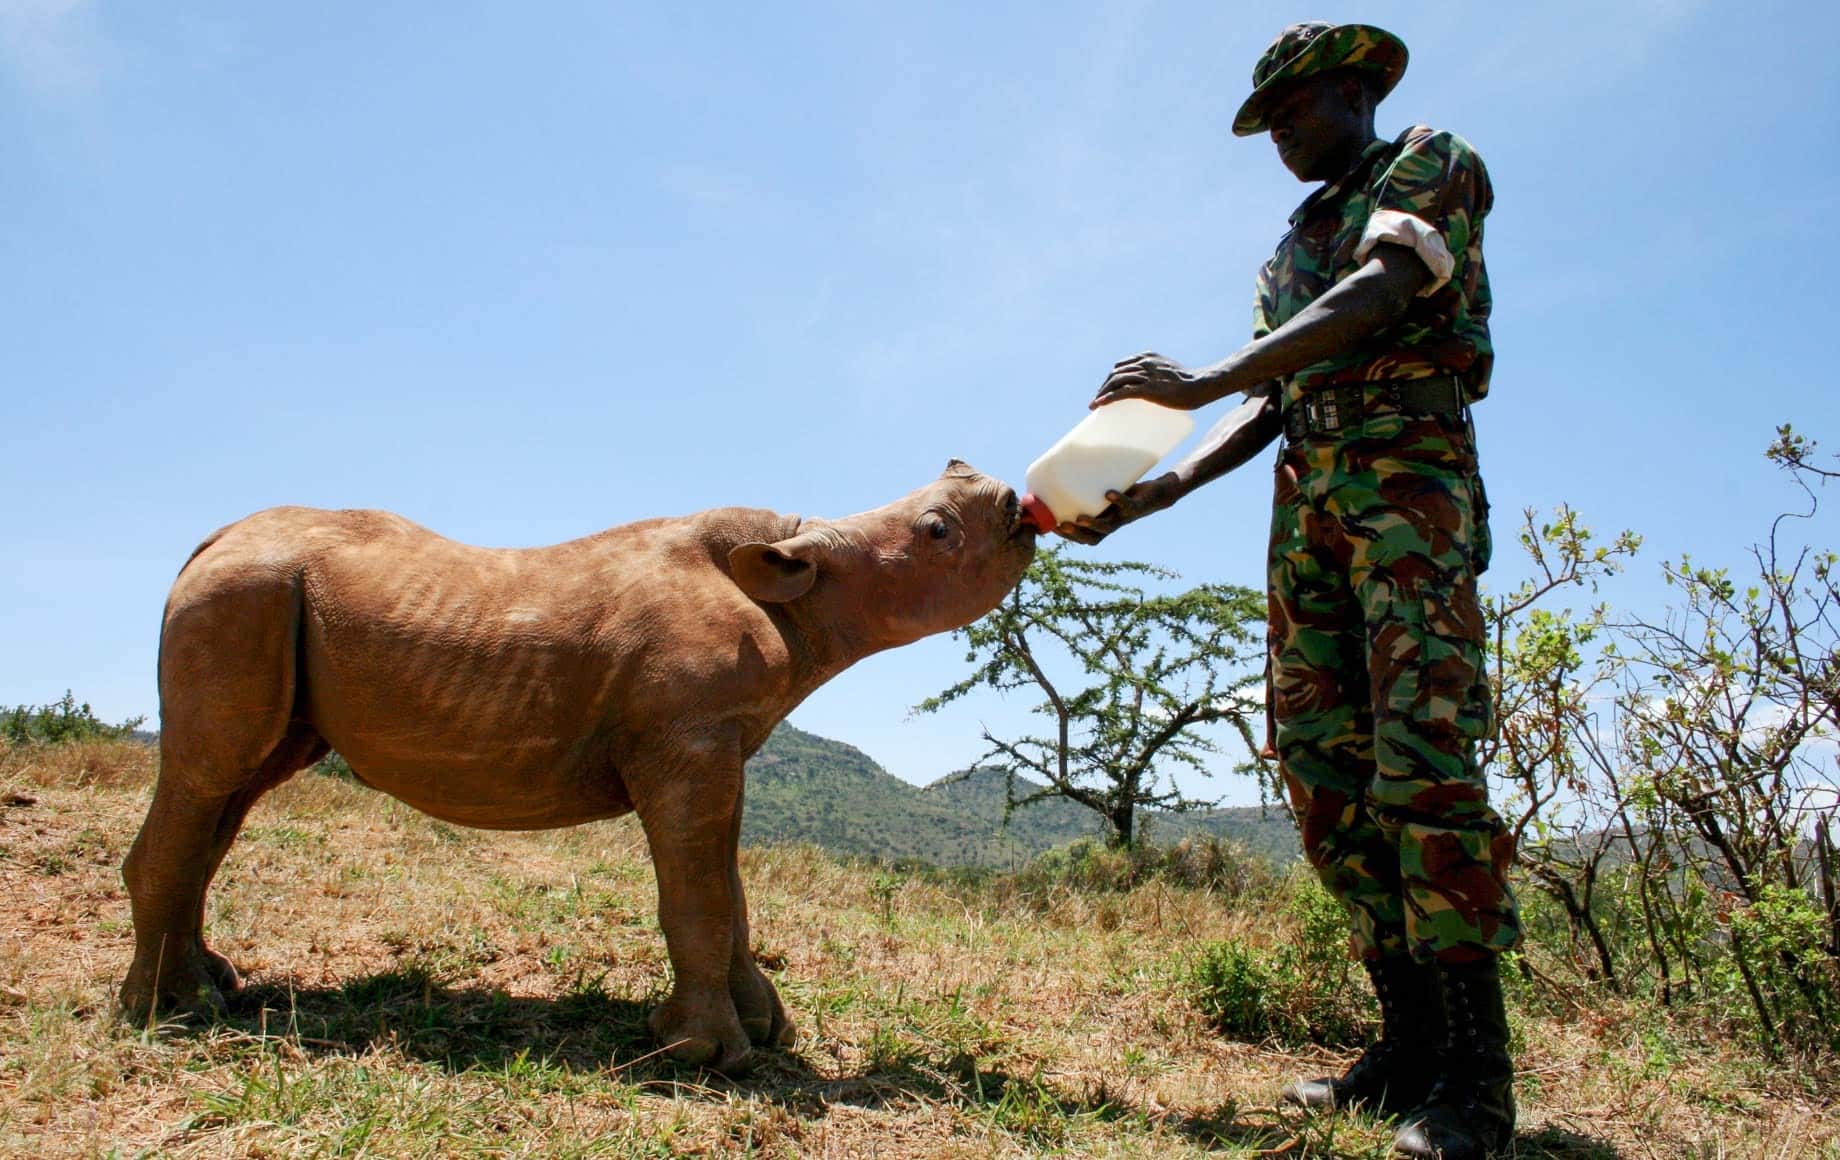 feeding baby rhino Ol Jogi